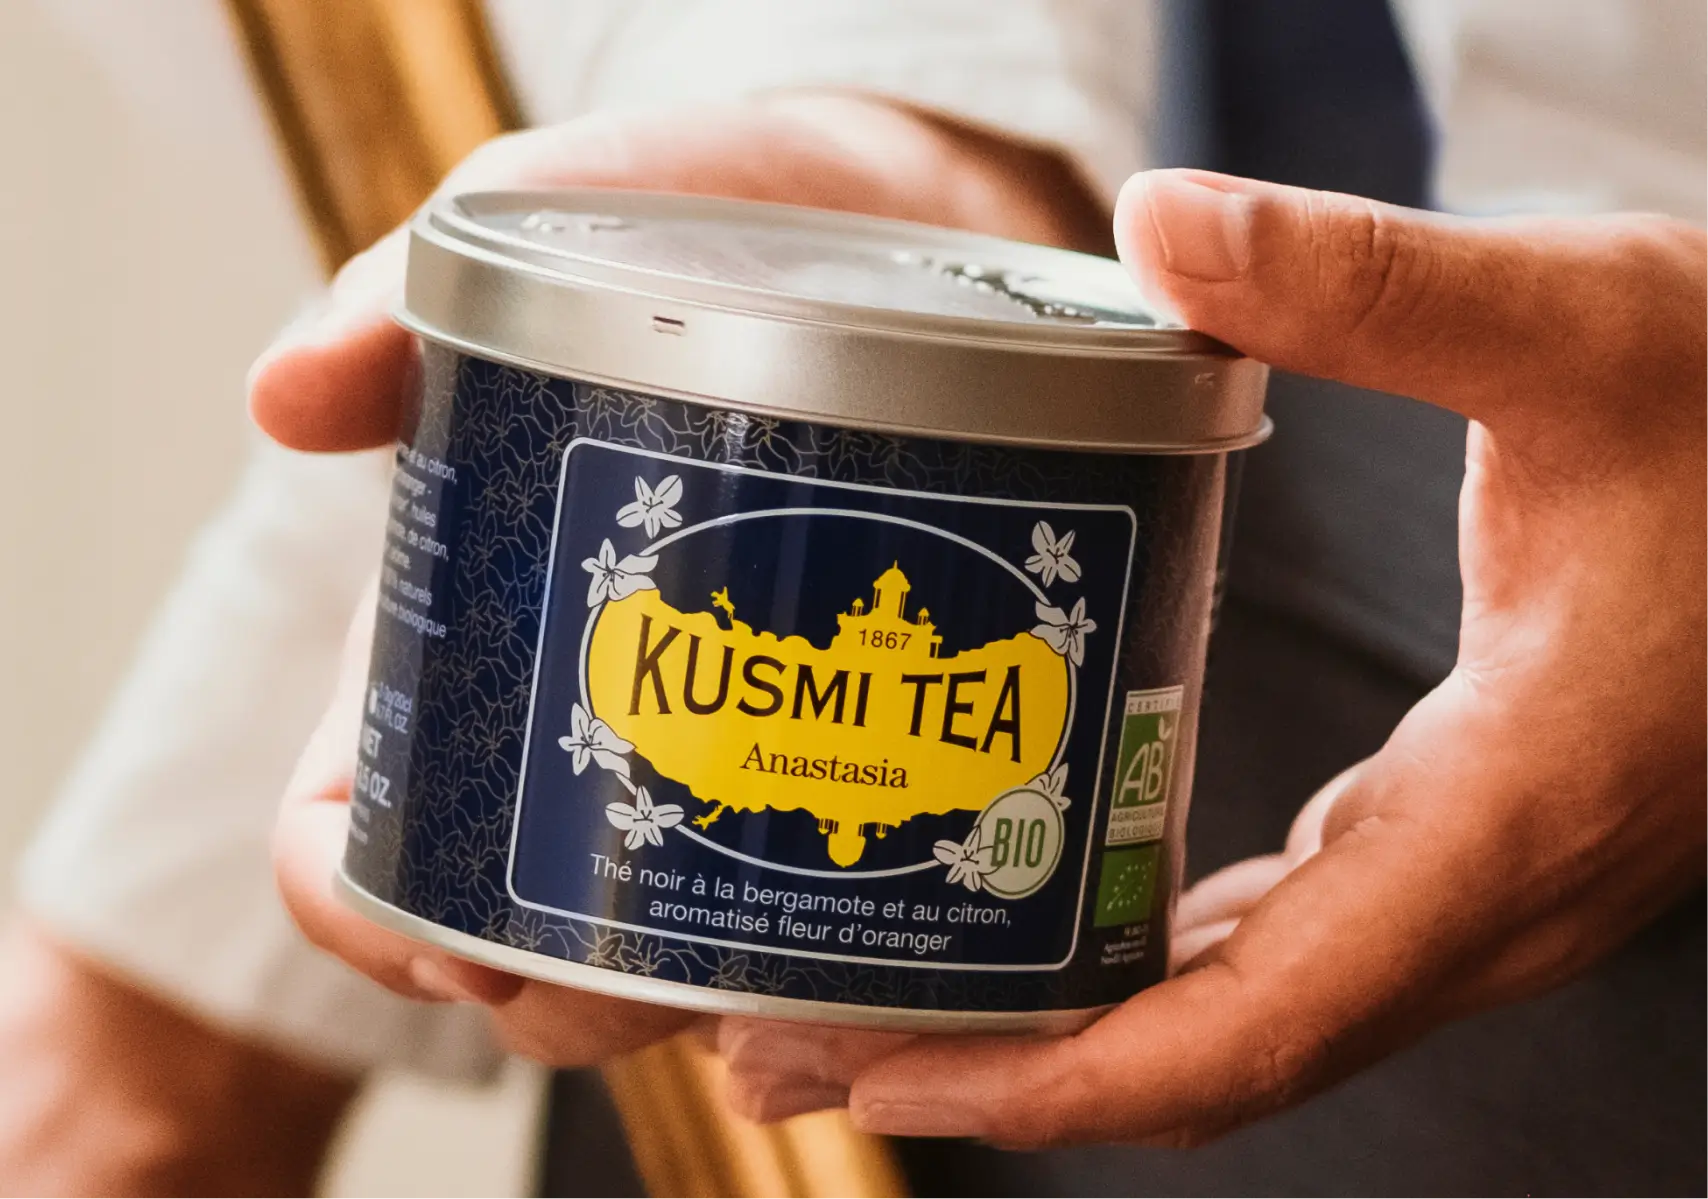 black tea product anastasia kusmi tea